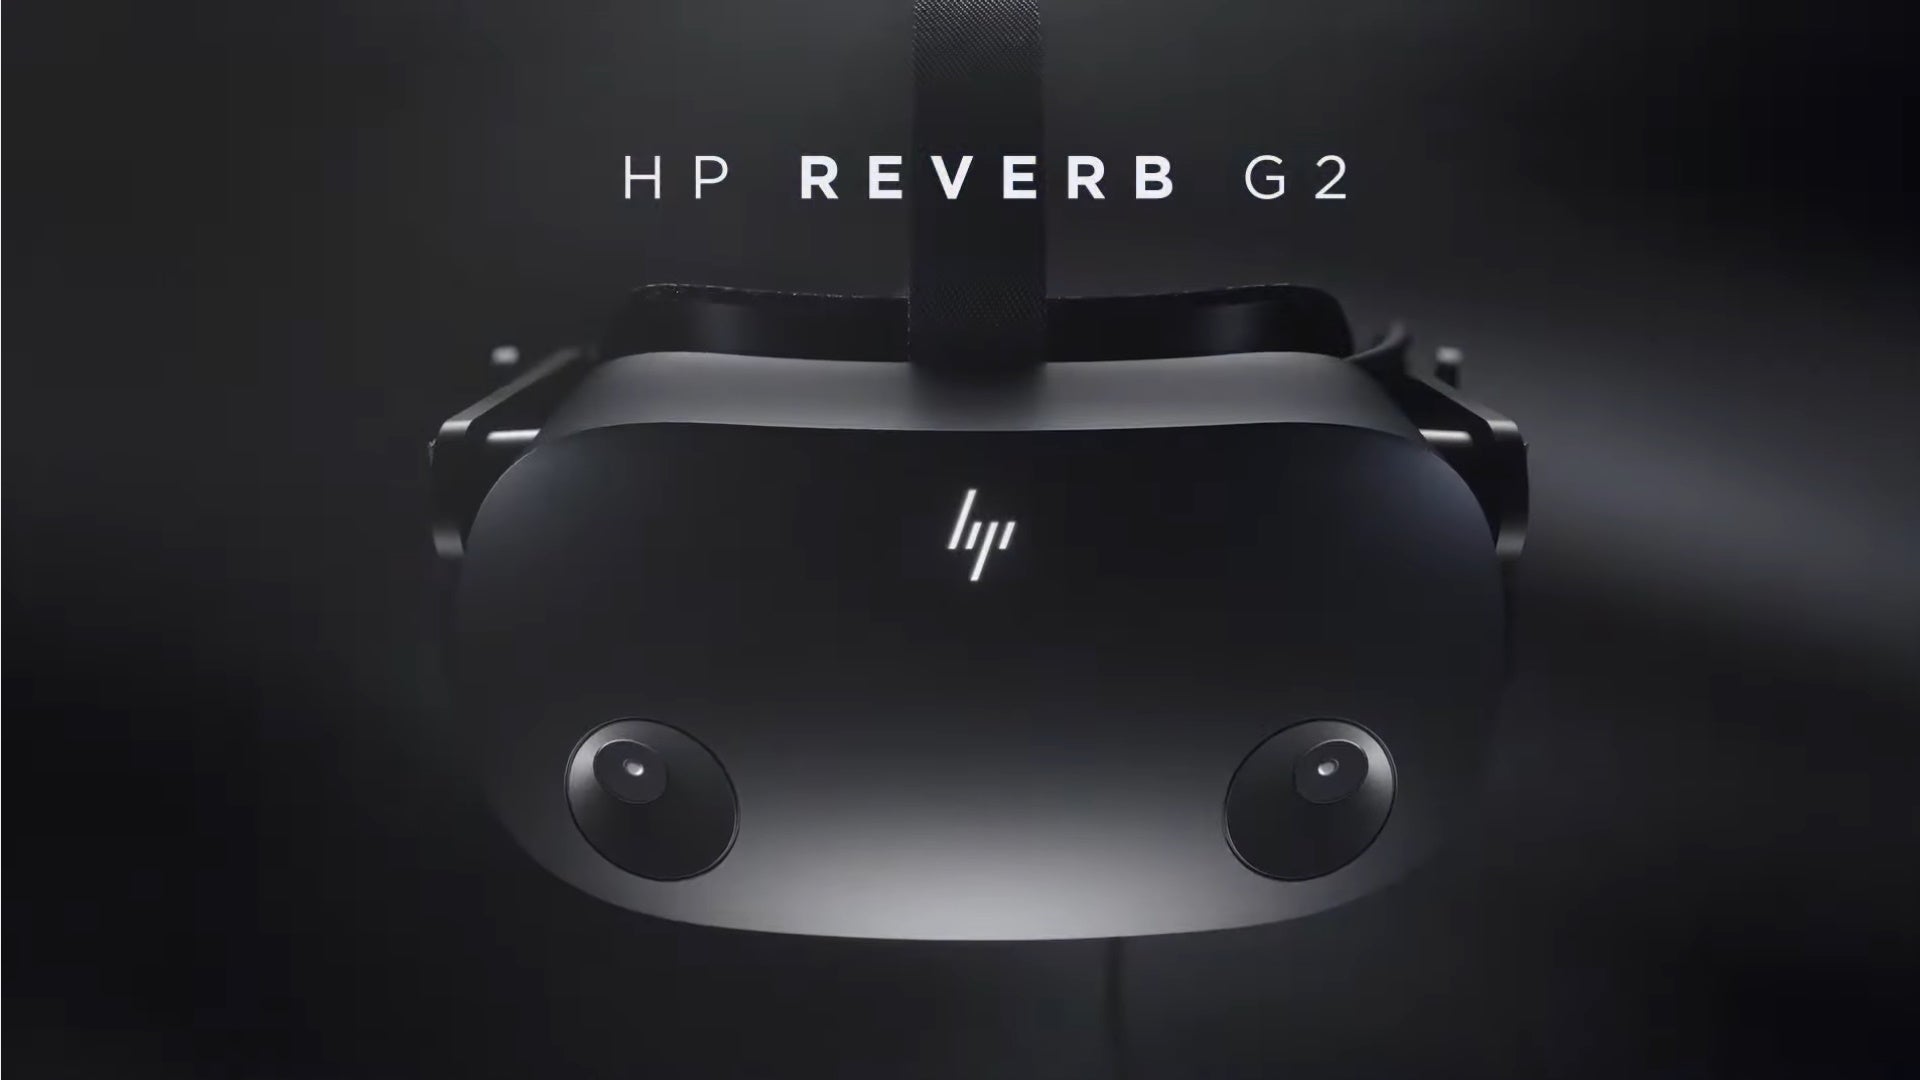 Dapatkan headset HP Reverb G2 VR seharga 9 setelah diskon 0